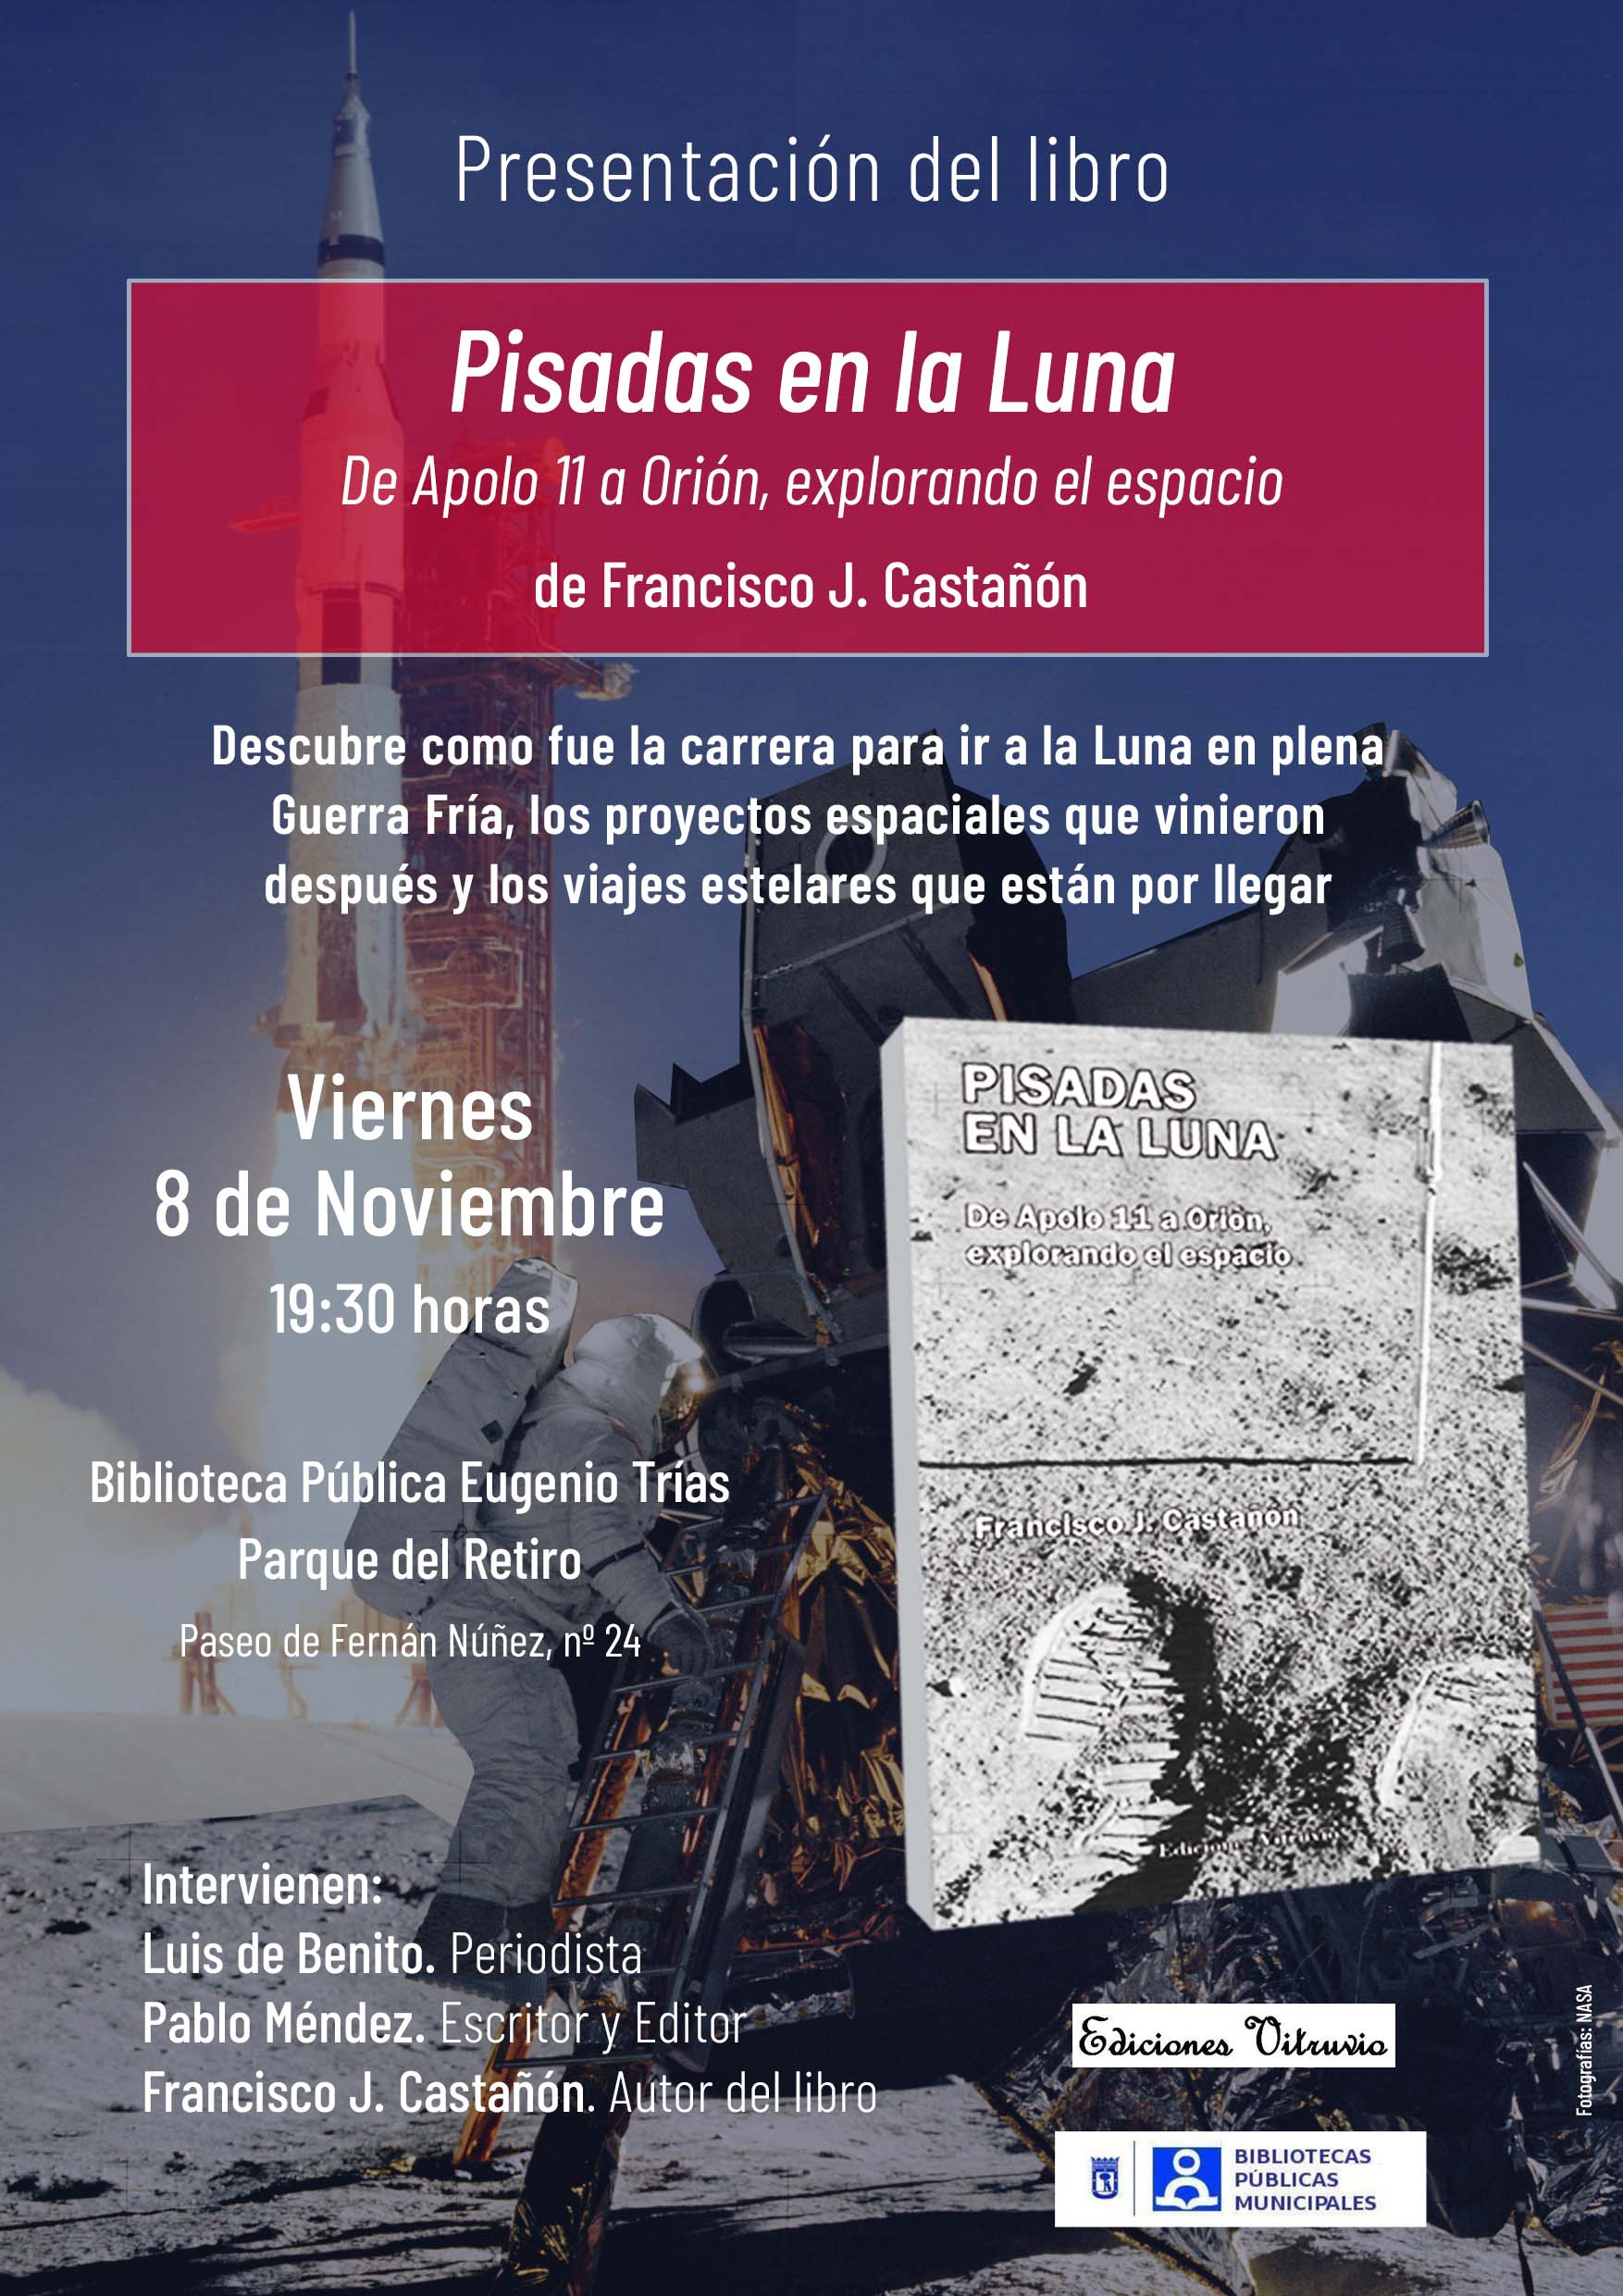 Presentación del libro ‘Pisadas en la Luna. De Apolo XI a Orión, explorando el espacio’ de Francisco J. Castañón